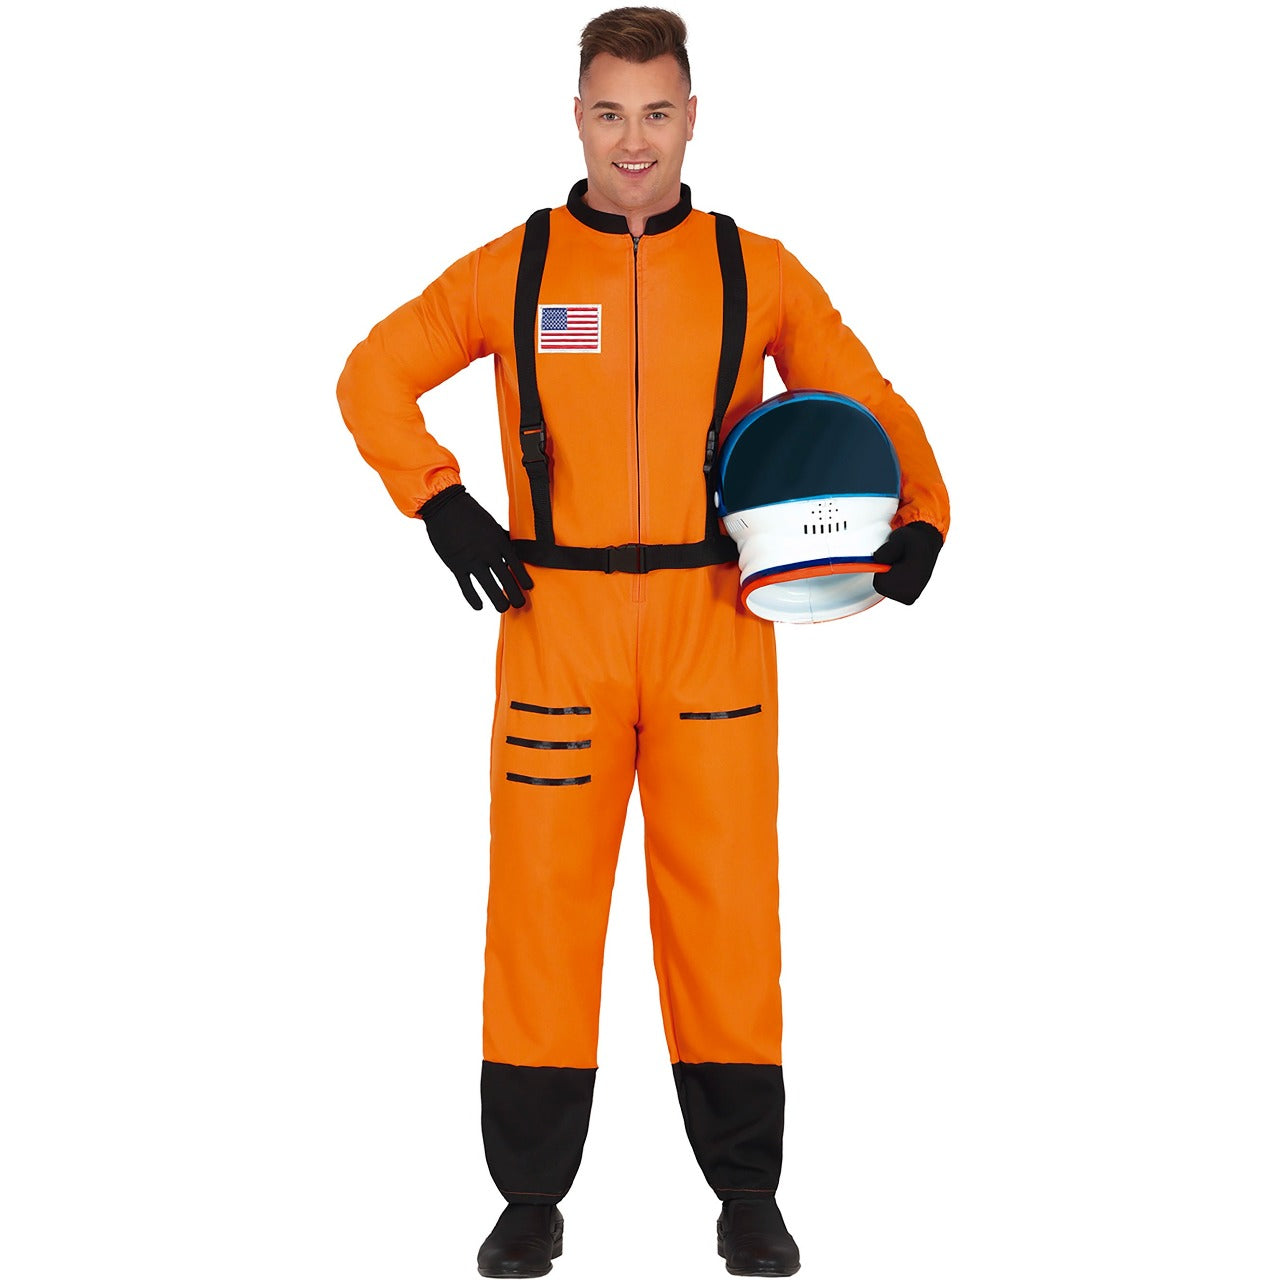 Acquista online costume da astronauta arancione da adulto